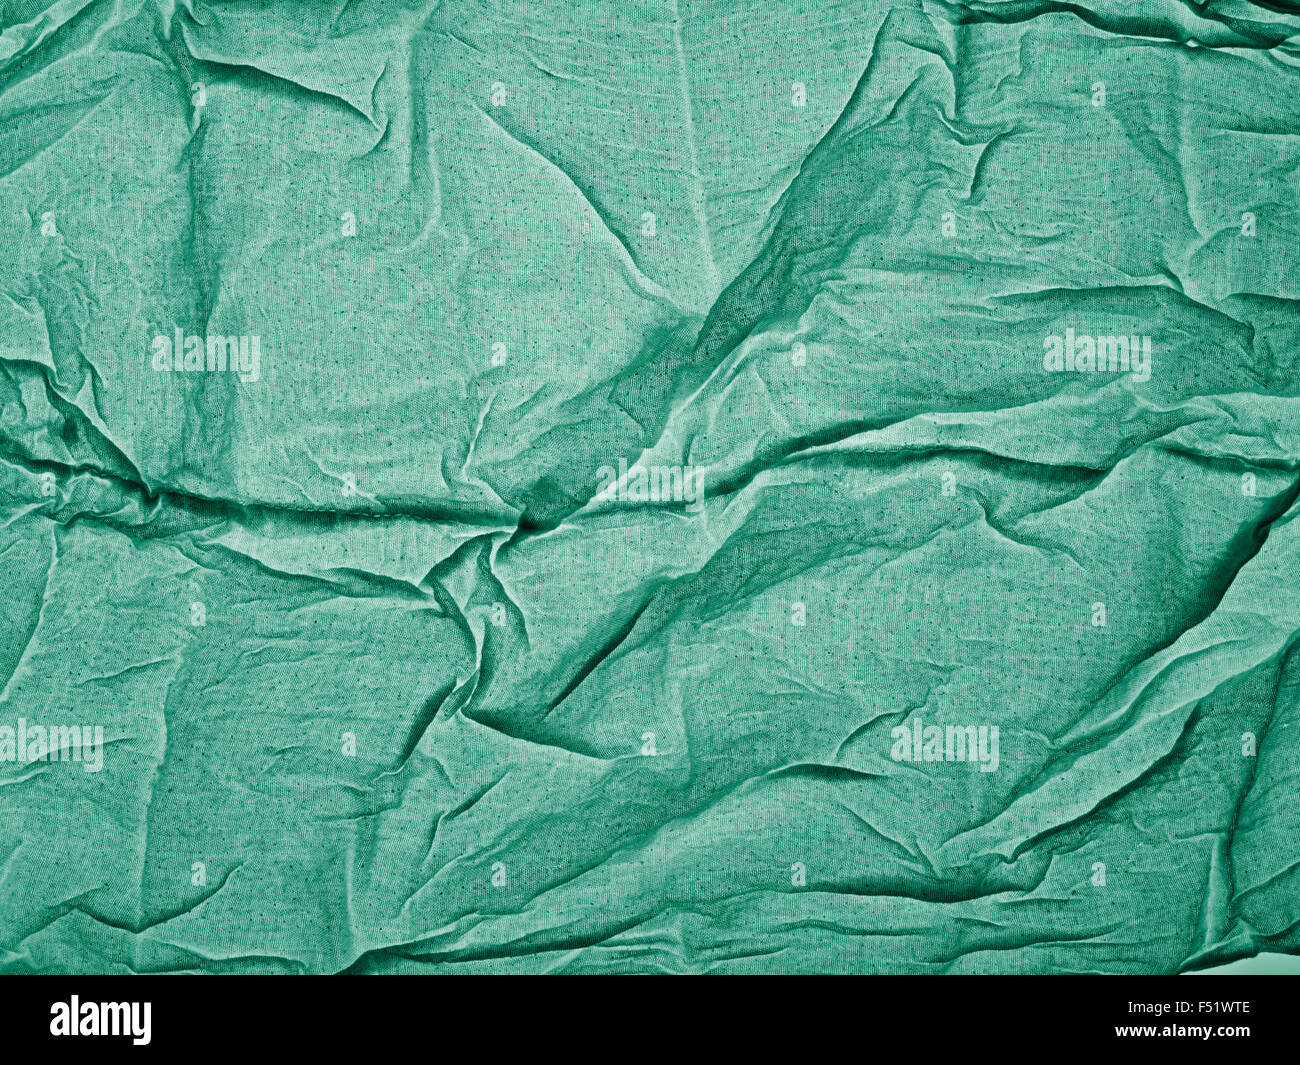 Tissu vert avec de légers plis Banque D'Images